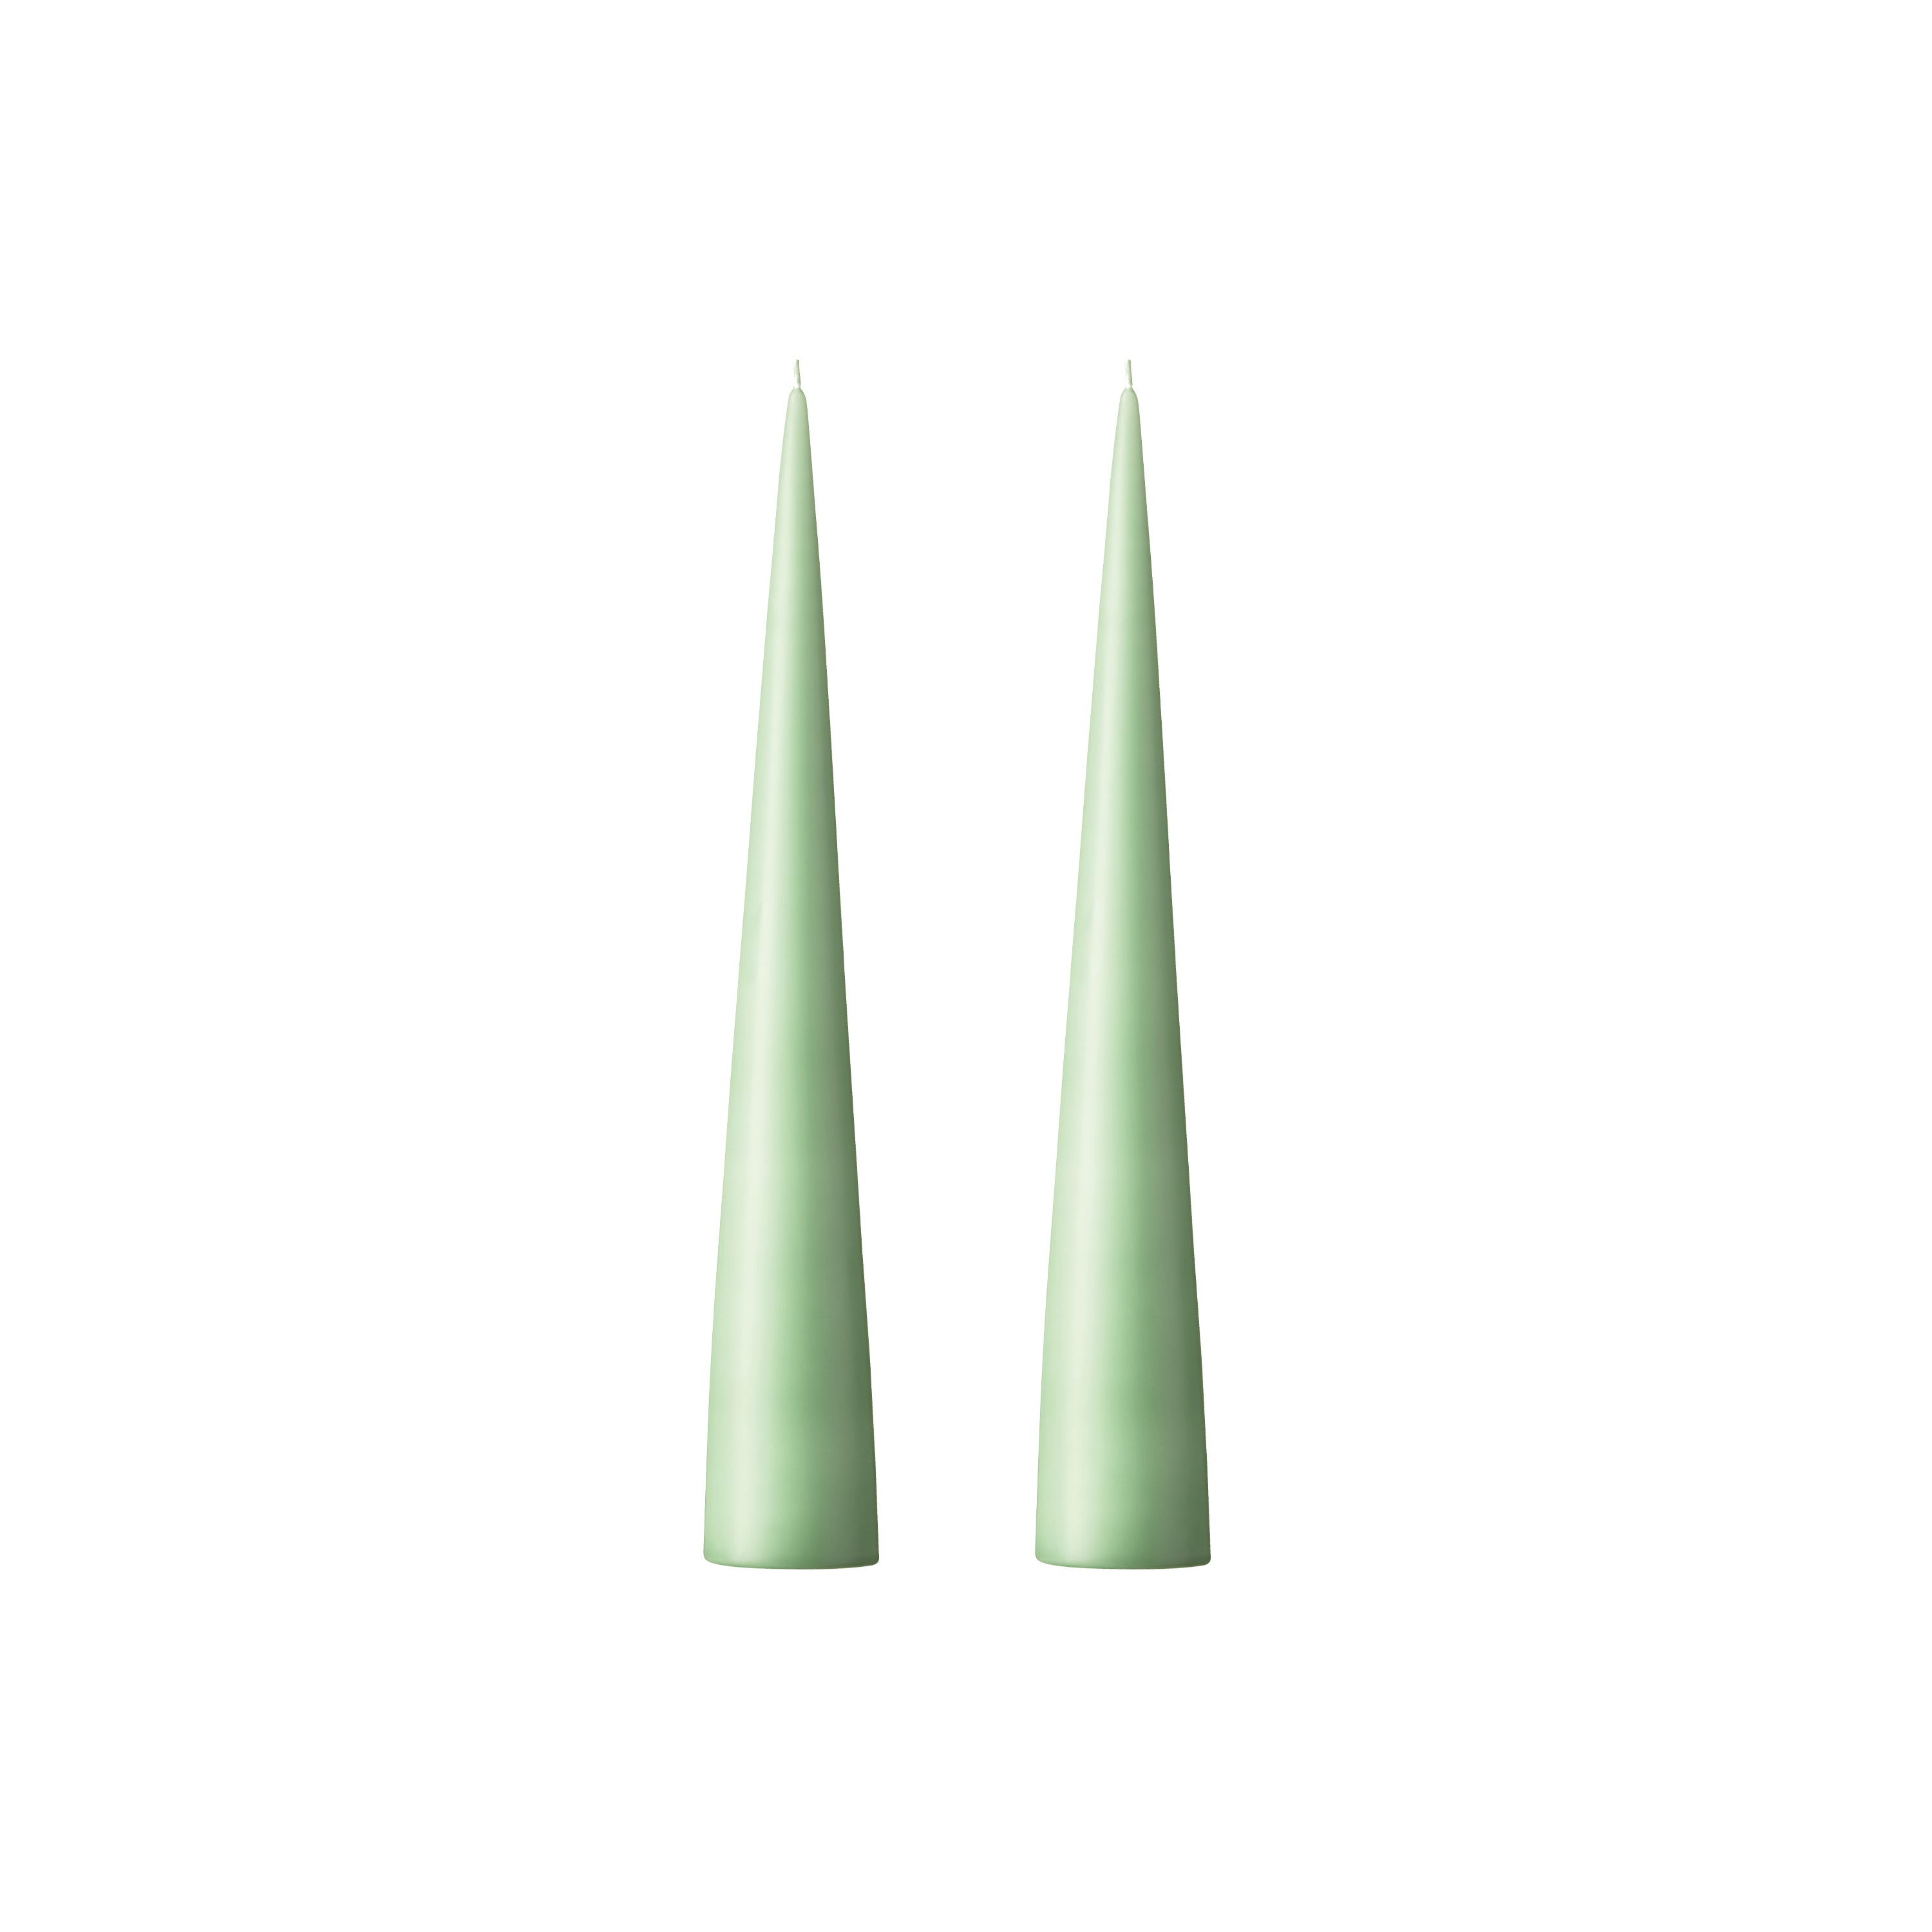 kaars eucalyptus groen 25cm Ester & Erik 66 kaars cone deco decoratie feest verjaardag communie lentefeest